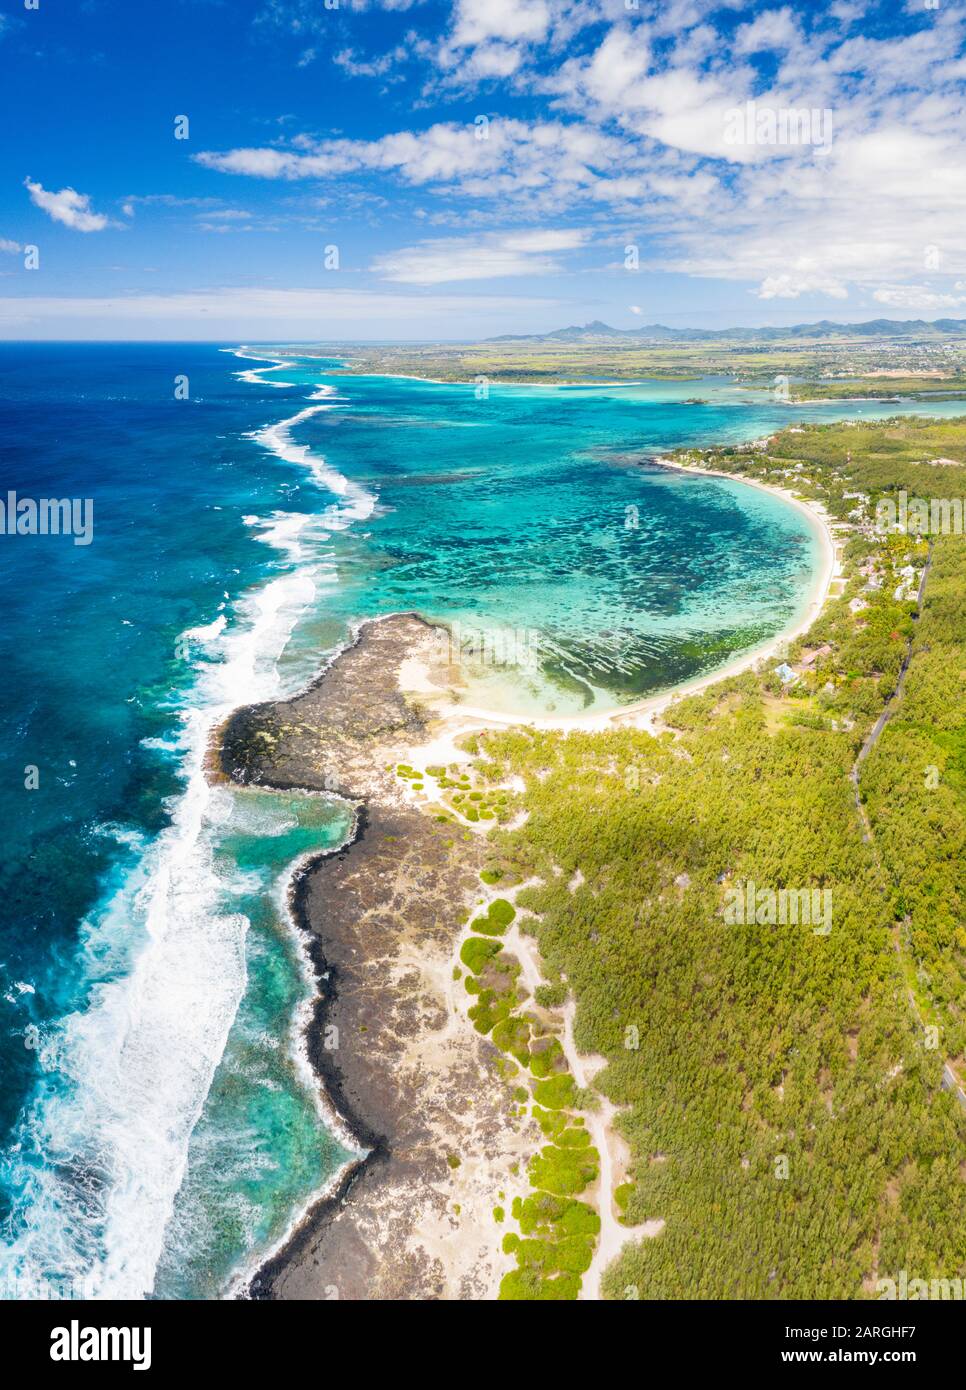 Panoramica aerea della spiaggia pubblica tropicale bagnata dalle onde dell'oceano, Poste Lafayette, East Coast, Mauritius, Oceano Indiano, Africa Foto Stock